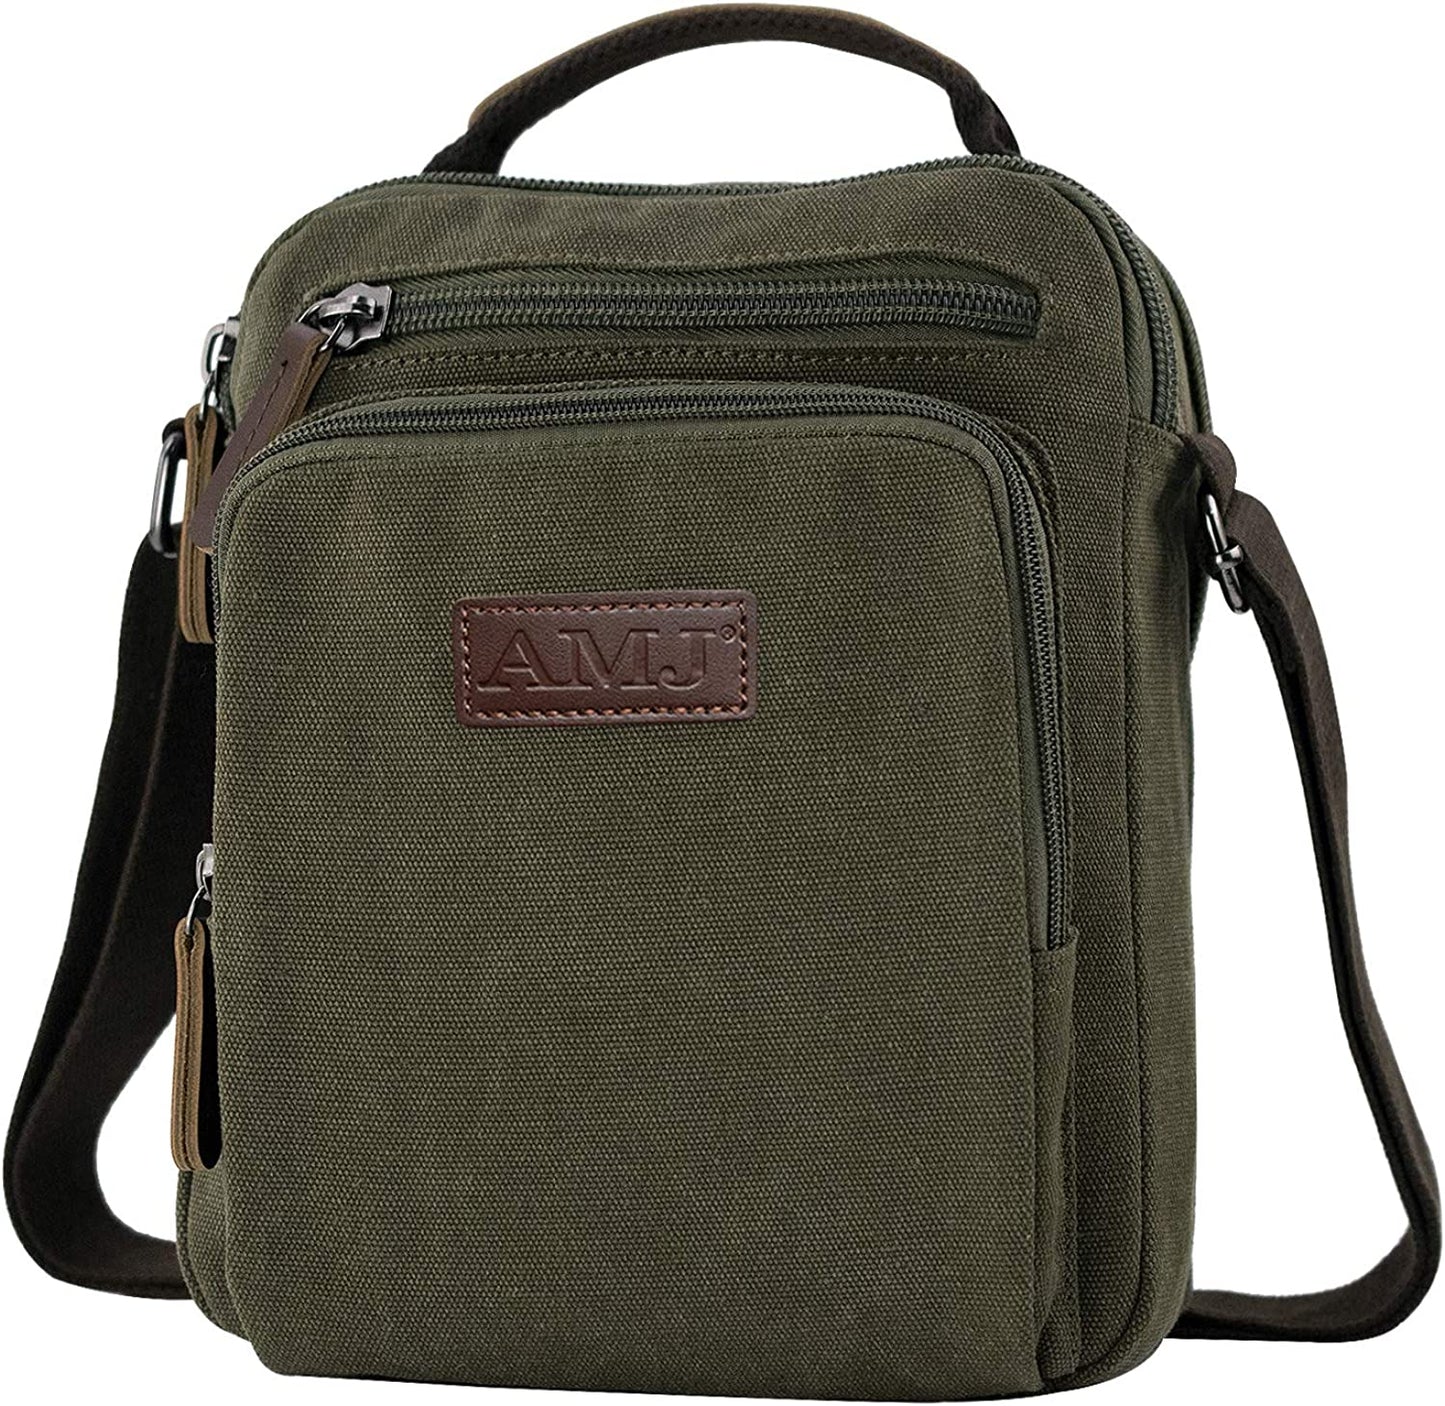 Messenger Bag for Men, Canvas Crossbody Shoulder Bags Vintage Satchel for Travel Work Business